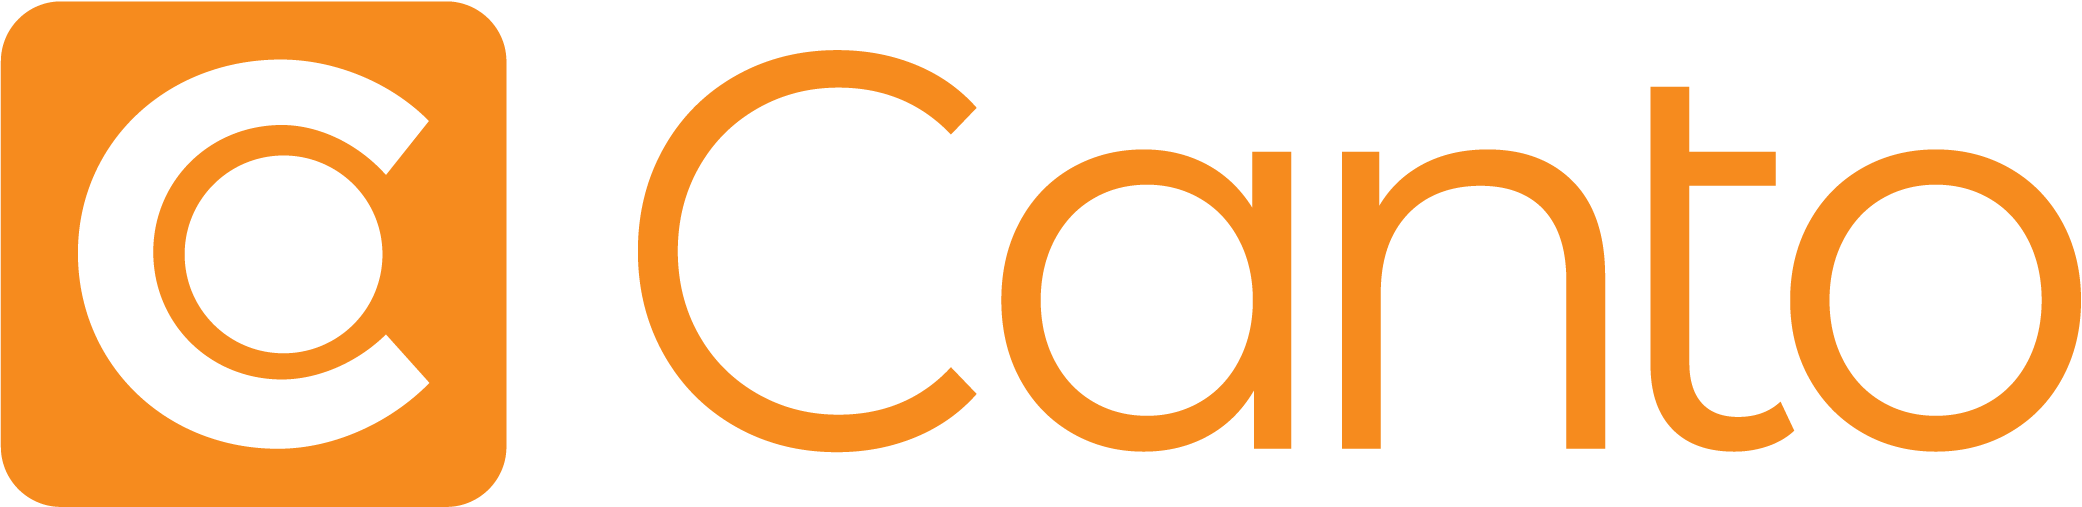 The Canto official logo